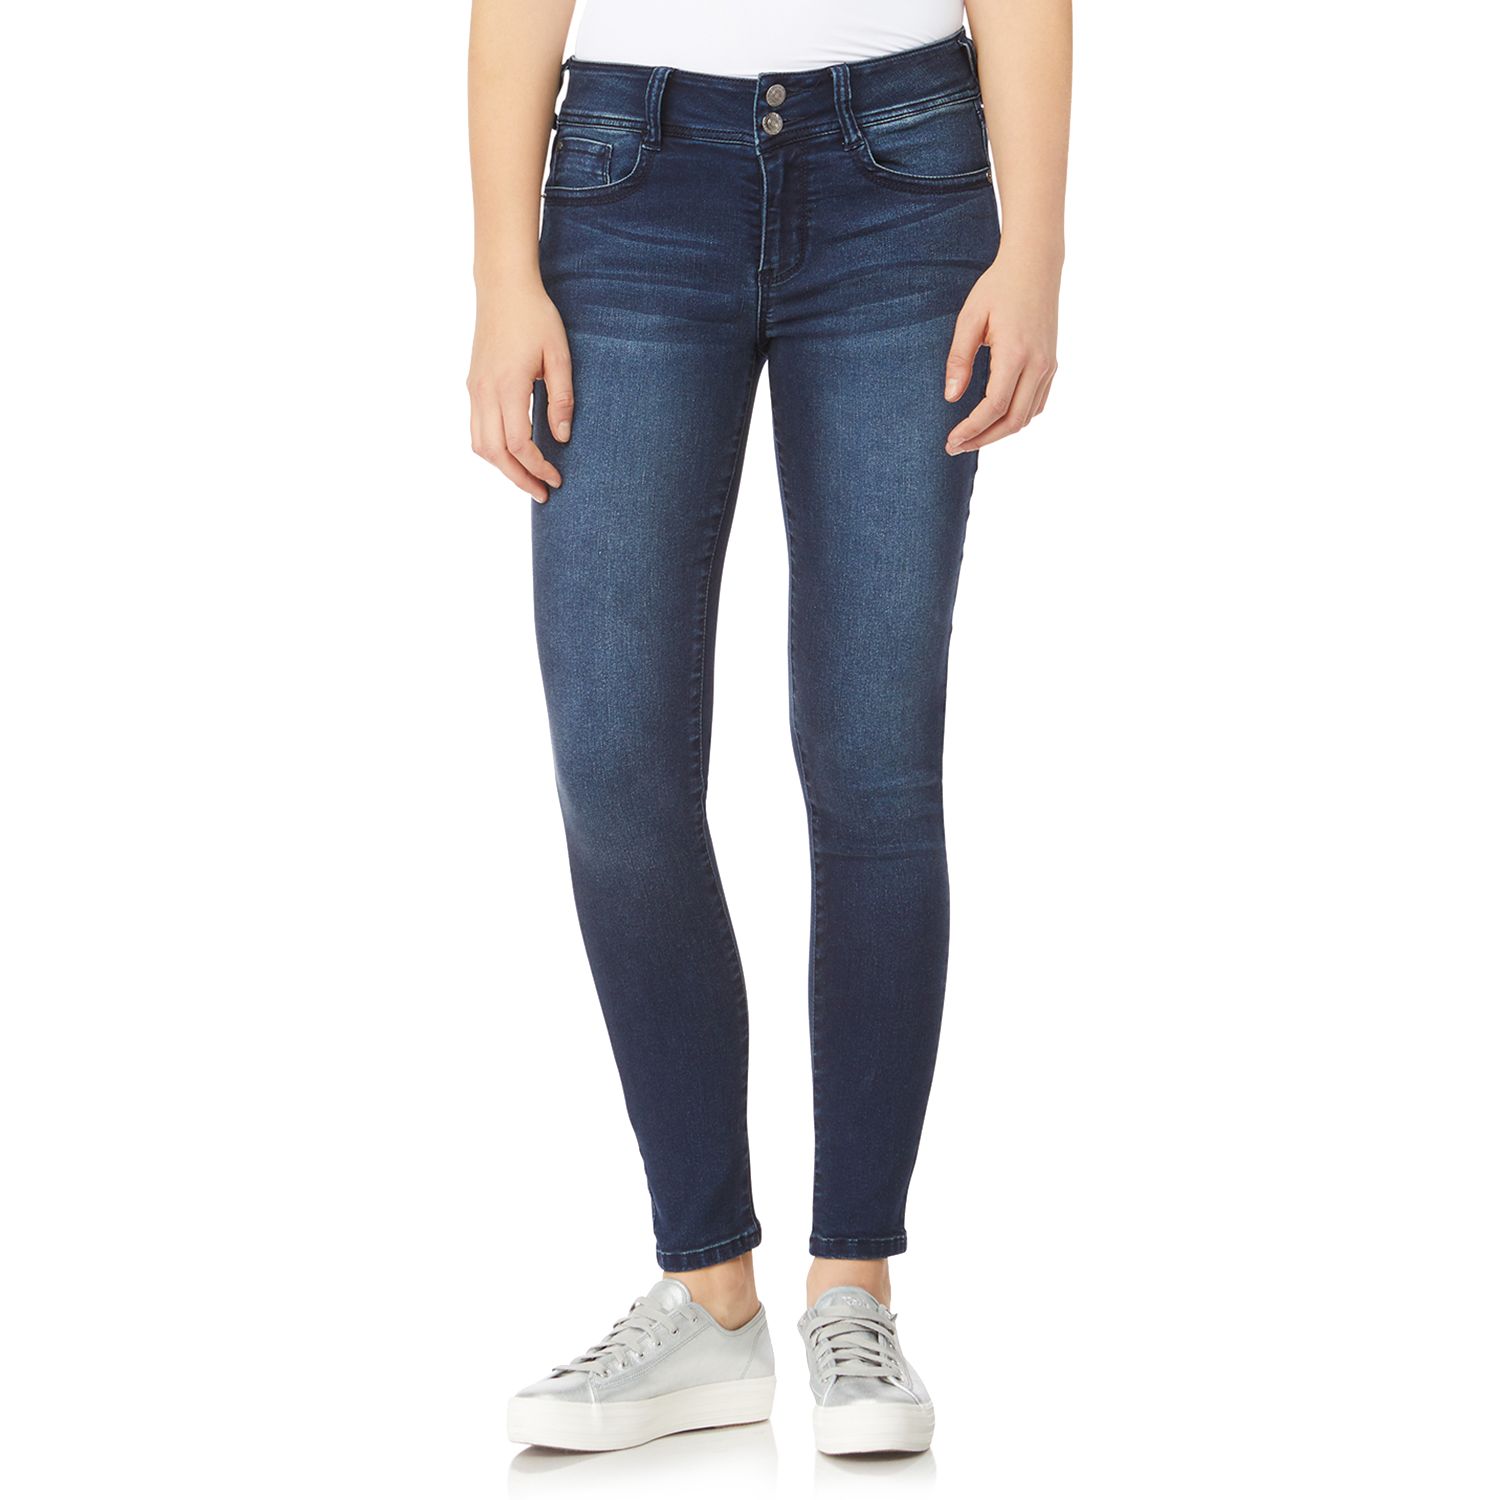 wallflower sassy skinny jeans